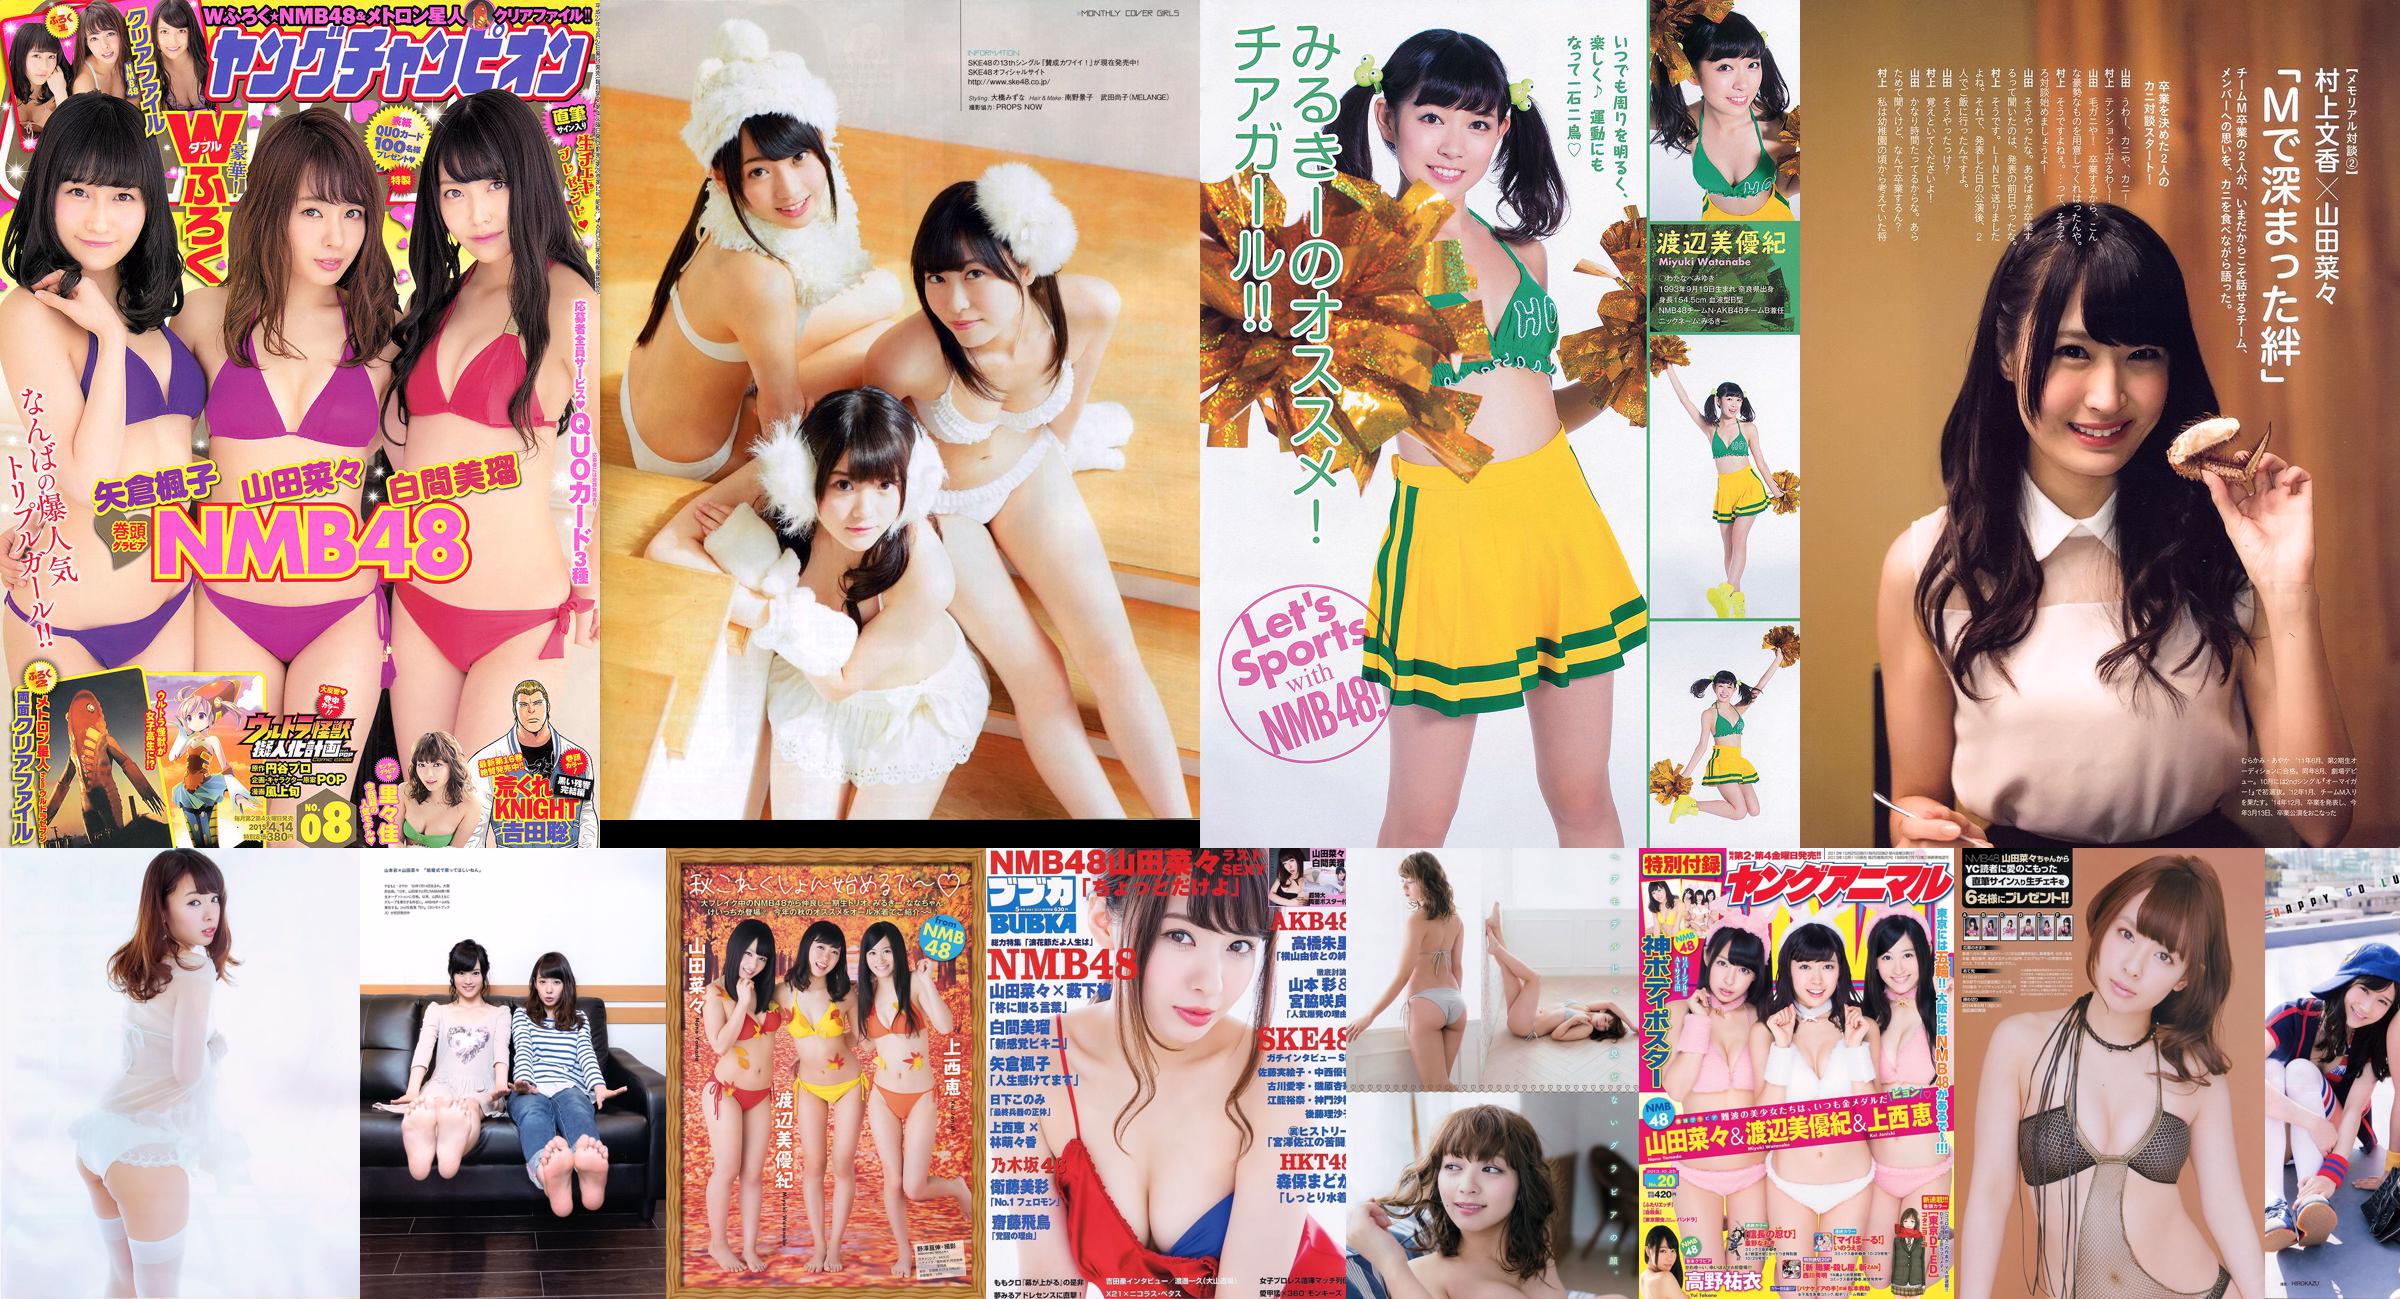 [Jeune Champion] Yamada Naa 2014 N ° 10 Photo Magazine No.a3b495 Page 1